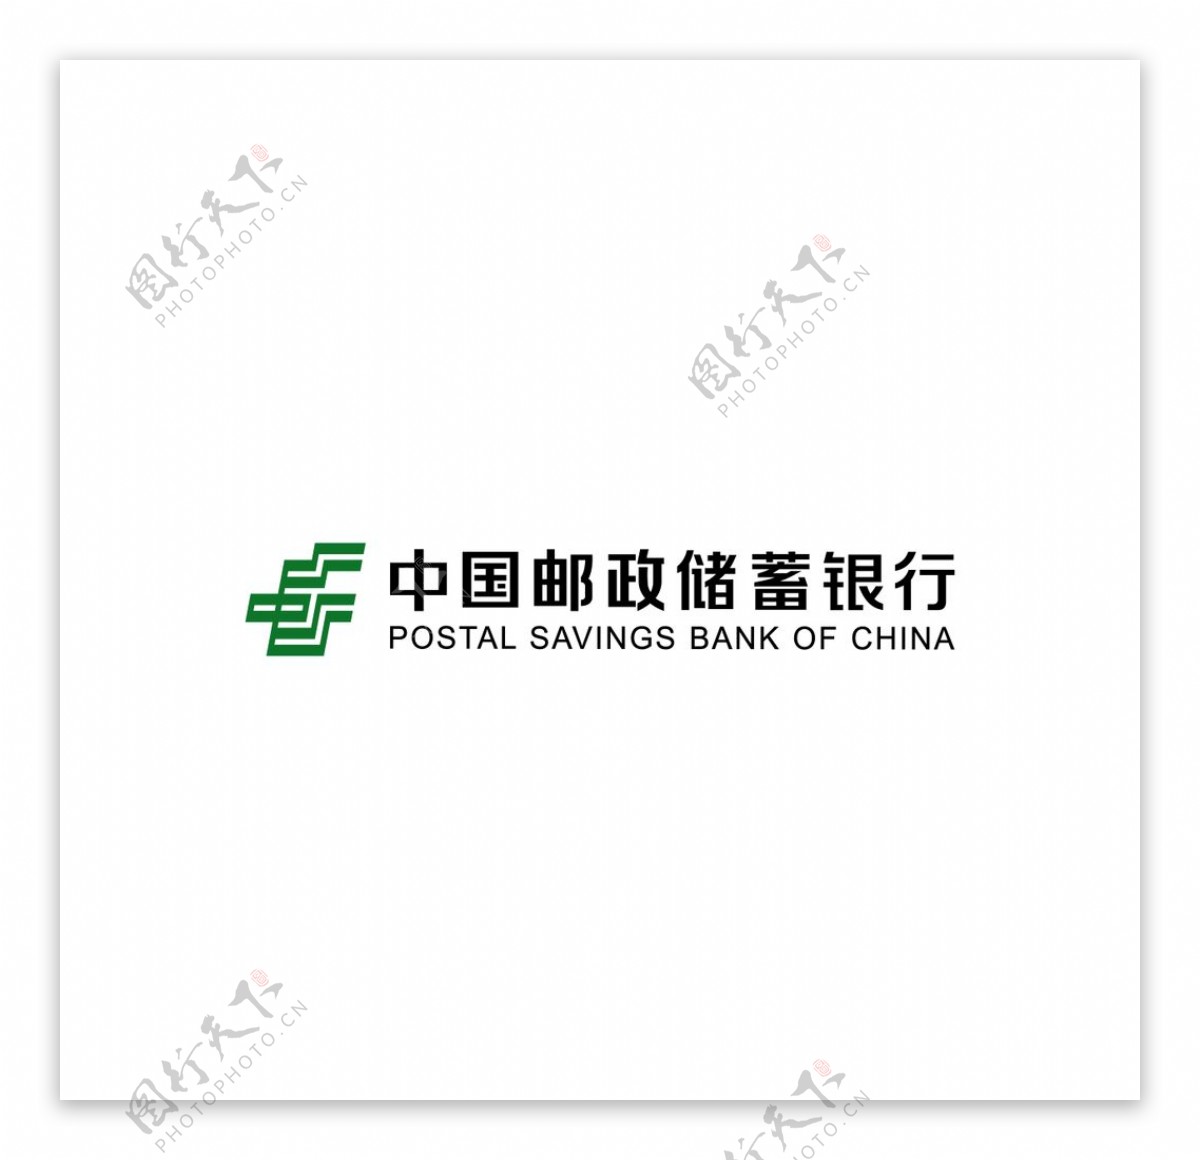 新版邮储银行logo标识横版图片